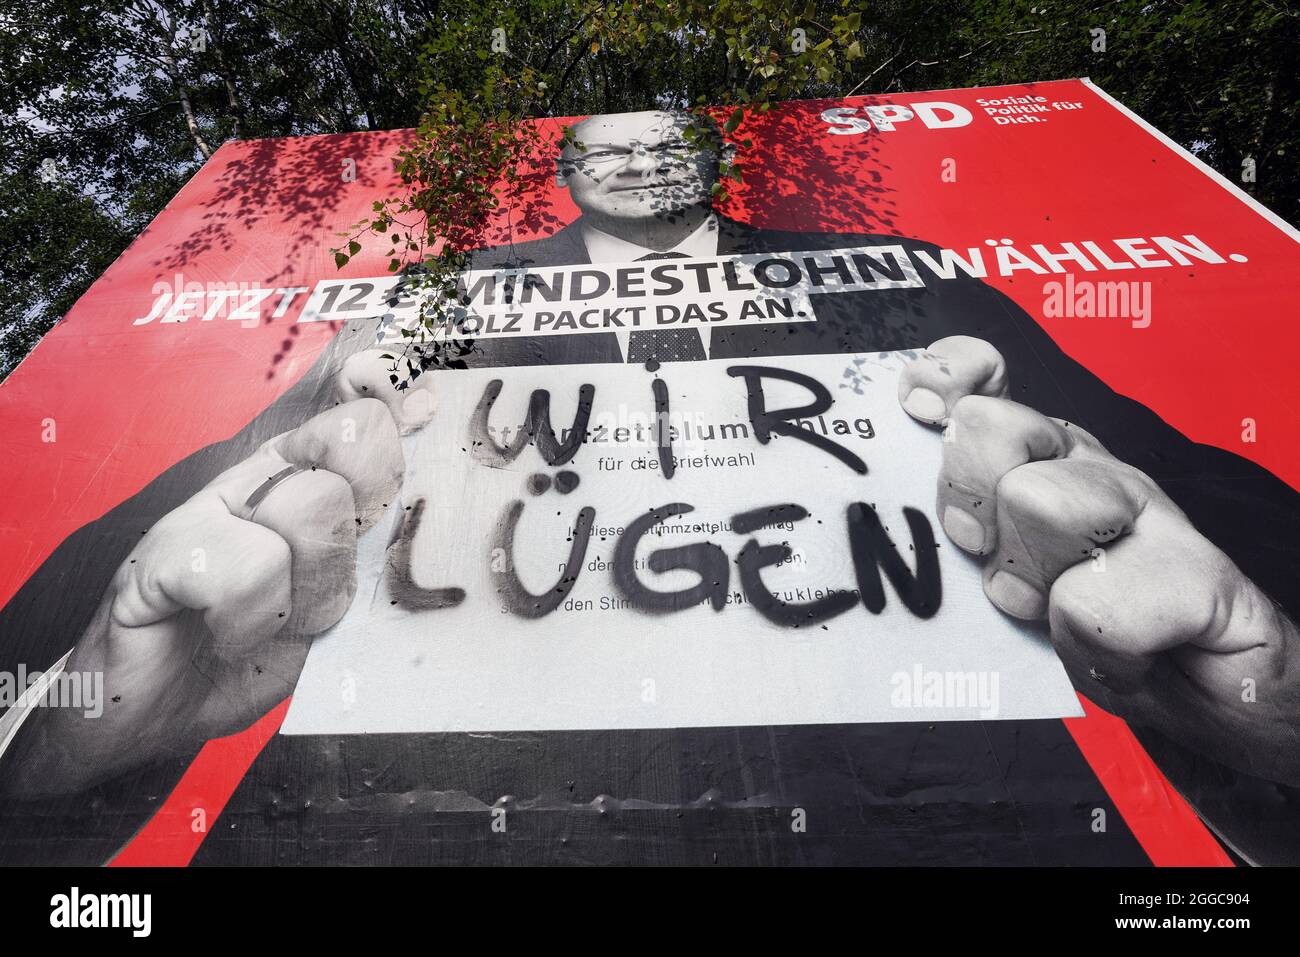 Bundestagswahl 2021, SPD-Kanzlerkandidat Olaf Scholz auf einem beschmierten Wahlplakat der SPD. Dortmund, 30.08.2021 Foto de stock